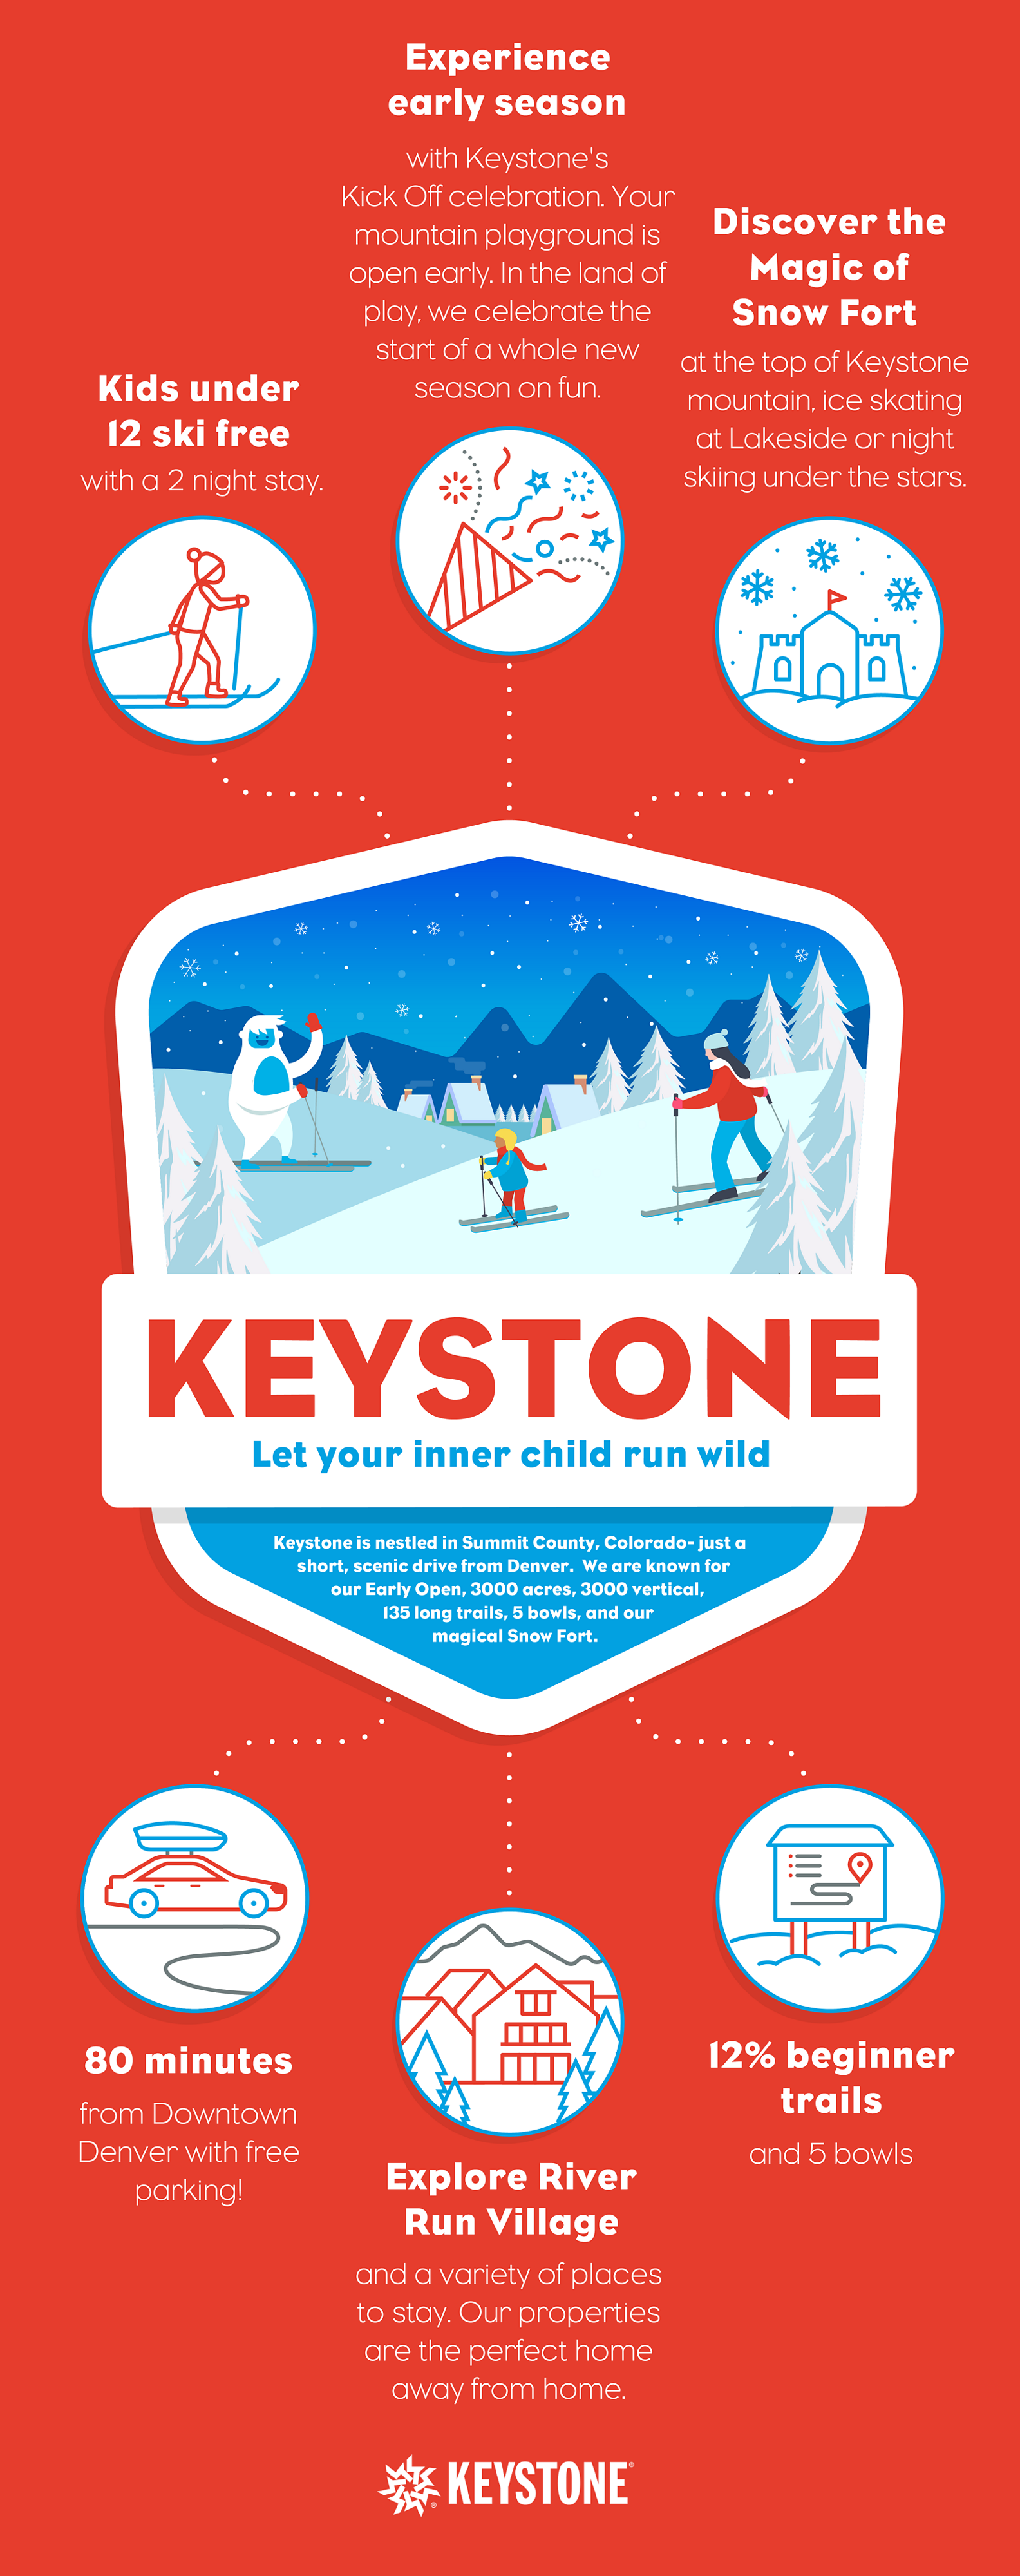 Keystone Resort  Keystone Ski Resort